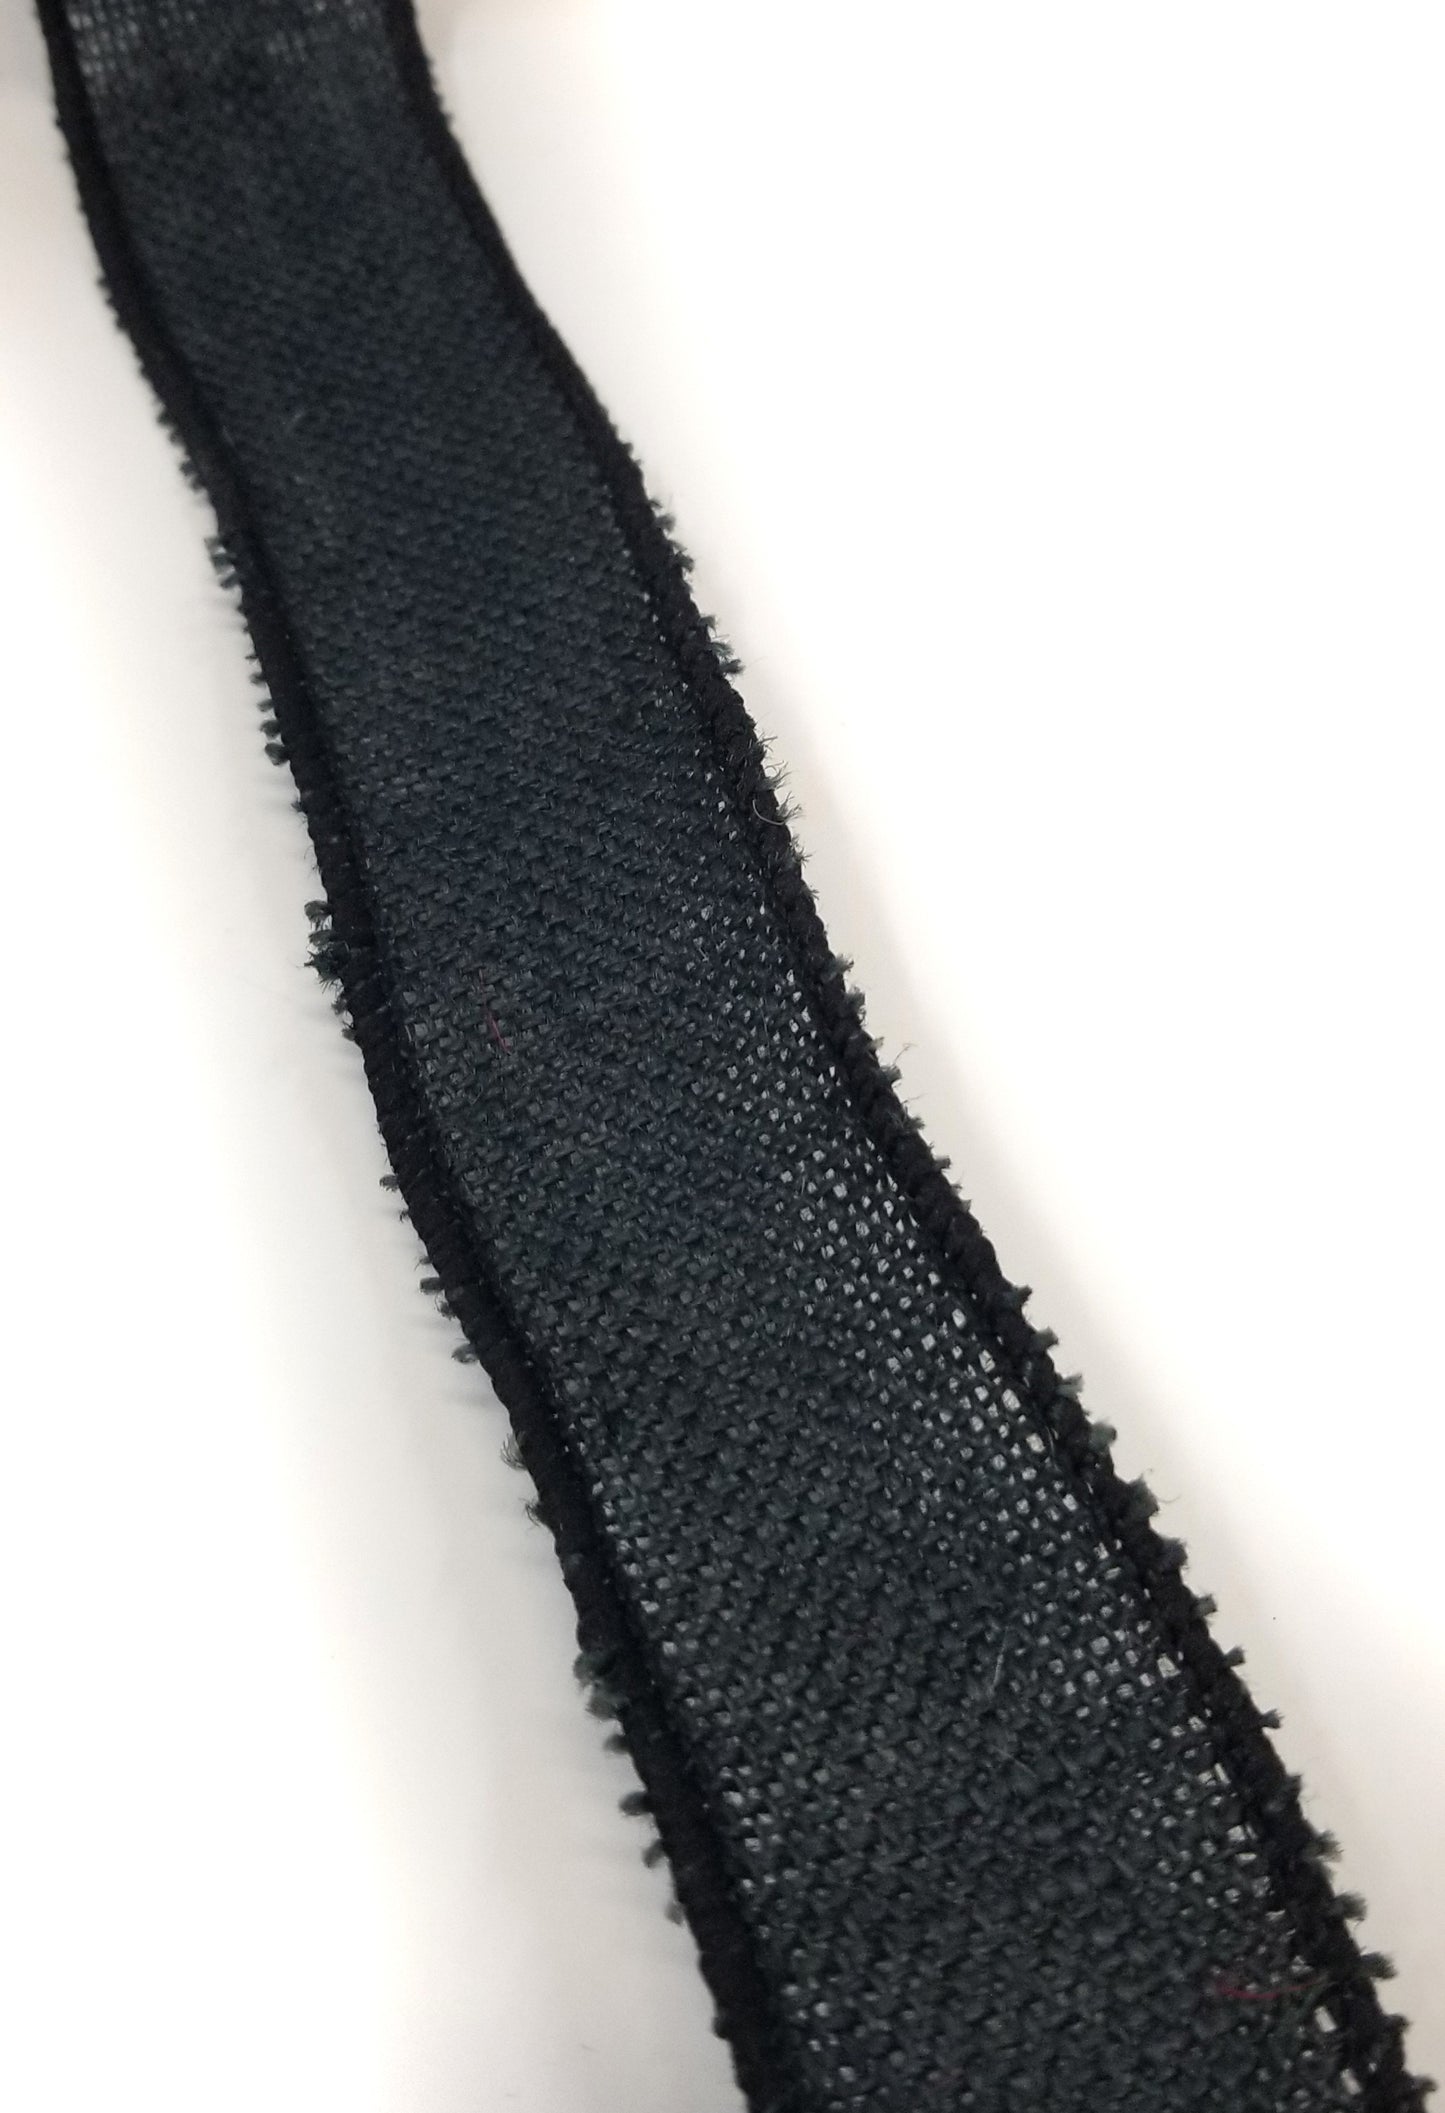 1.5 Black Velvet Ribbon